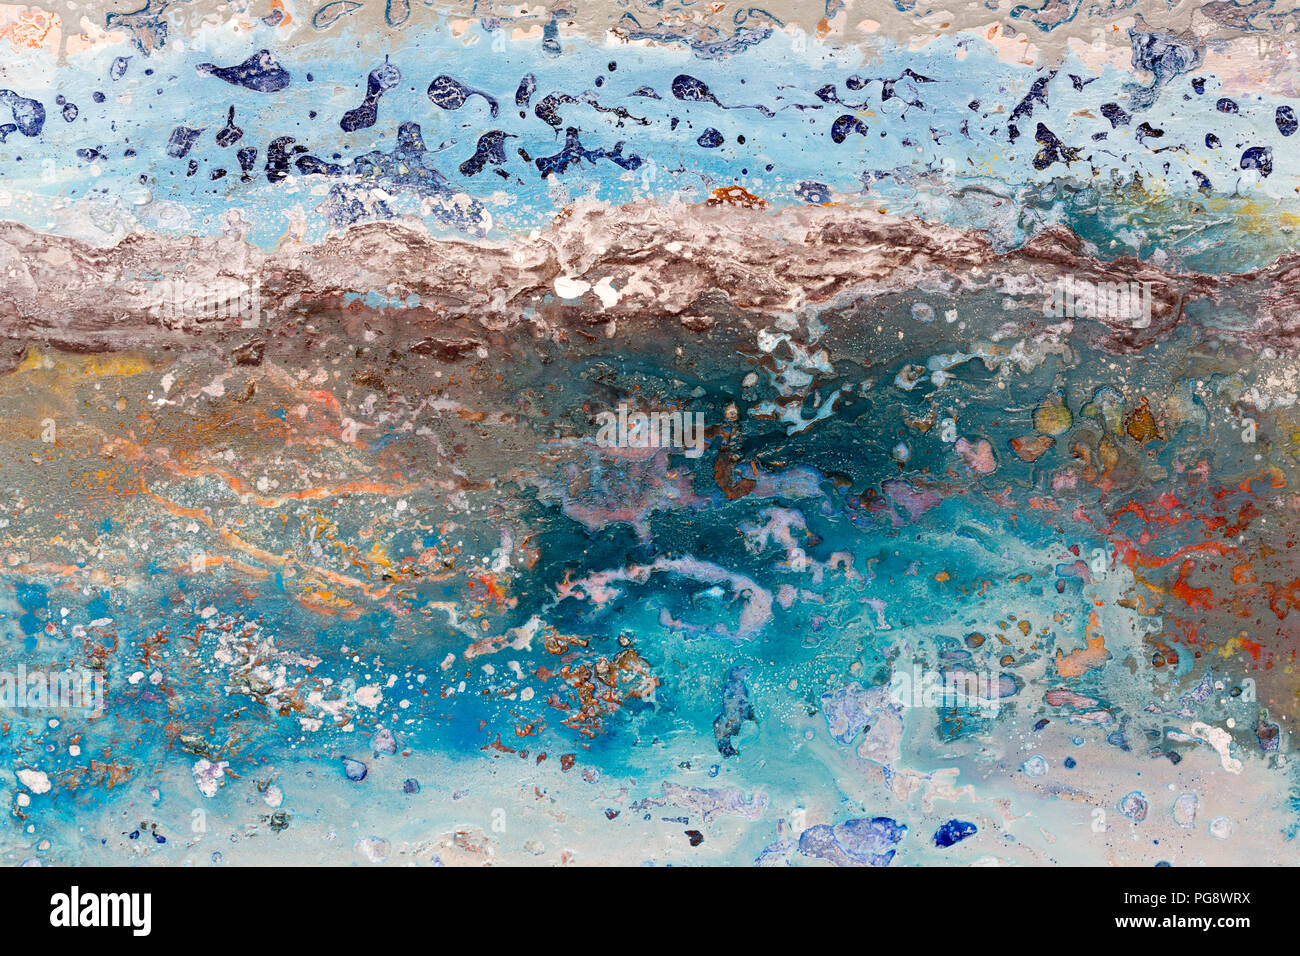 Meer Strand. Landschaft mit dem Meer. Malerei, Bildkunst Stockfotografie -  Alamy